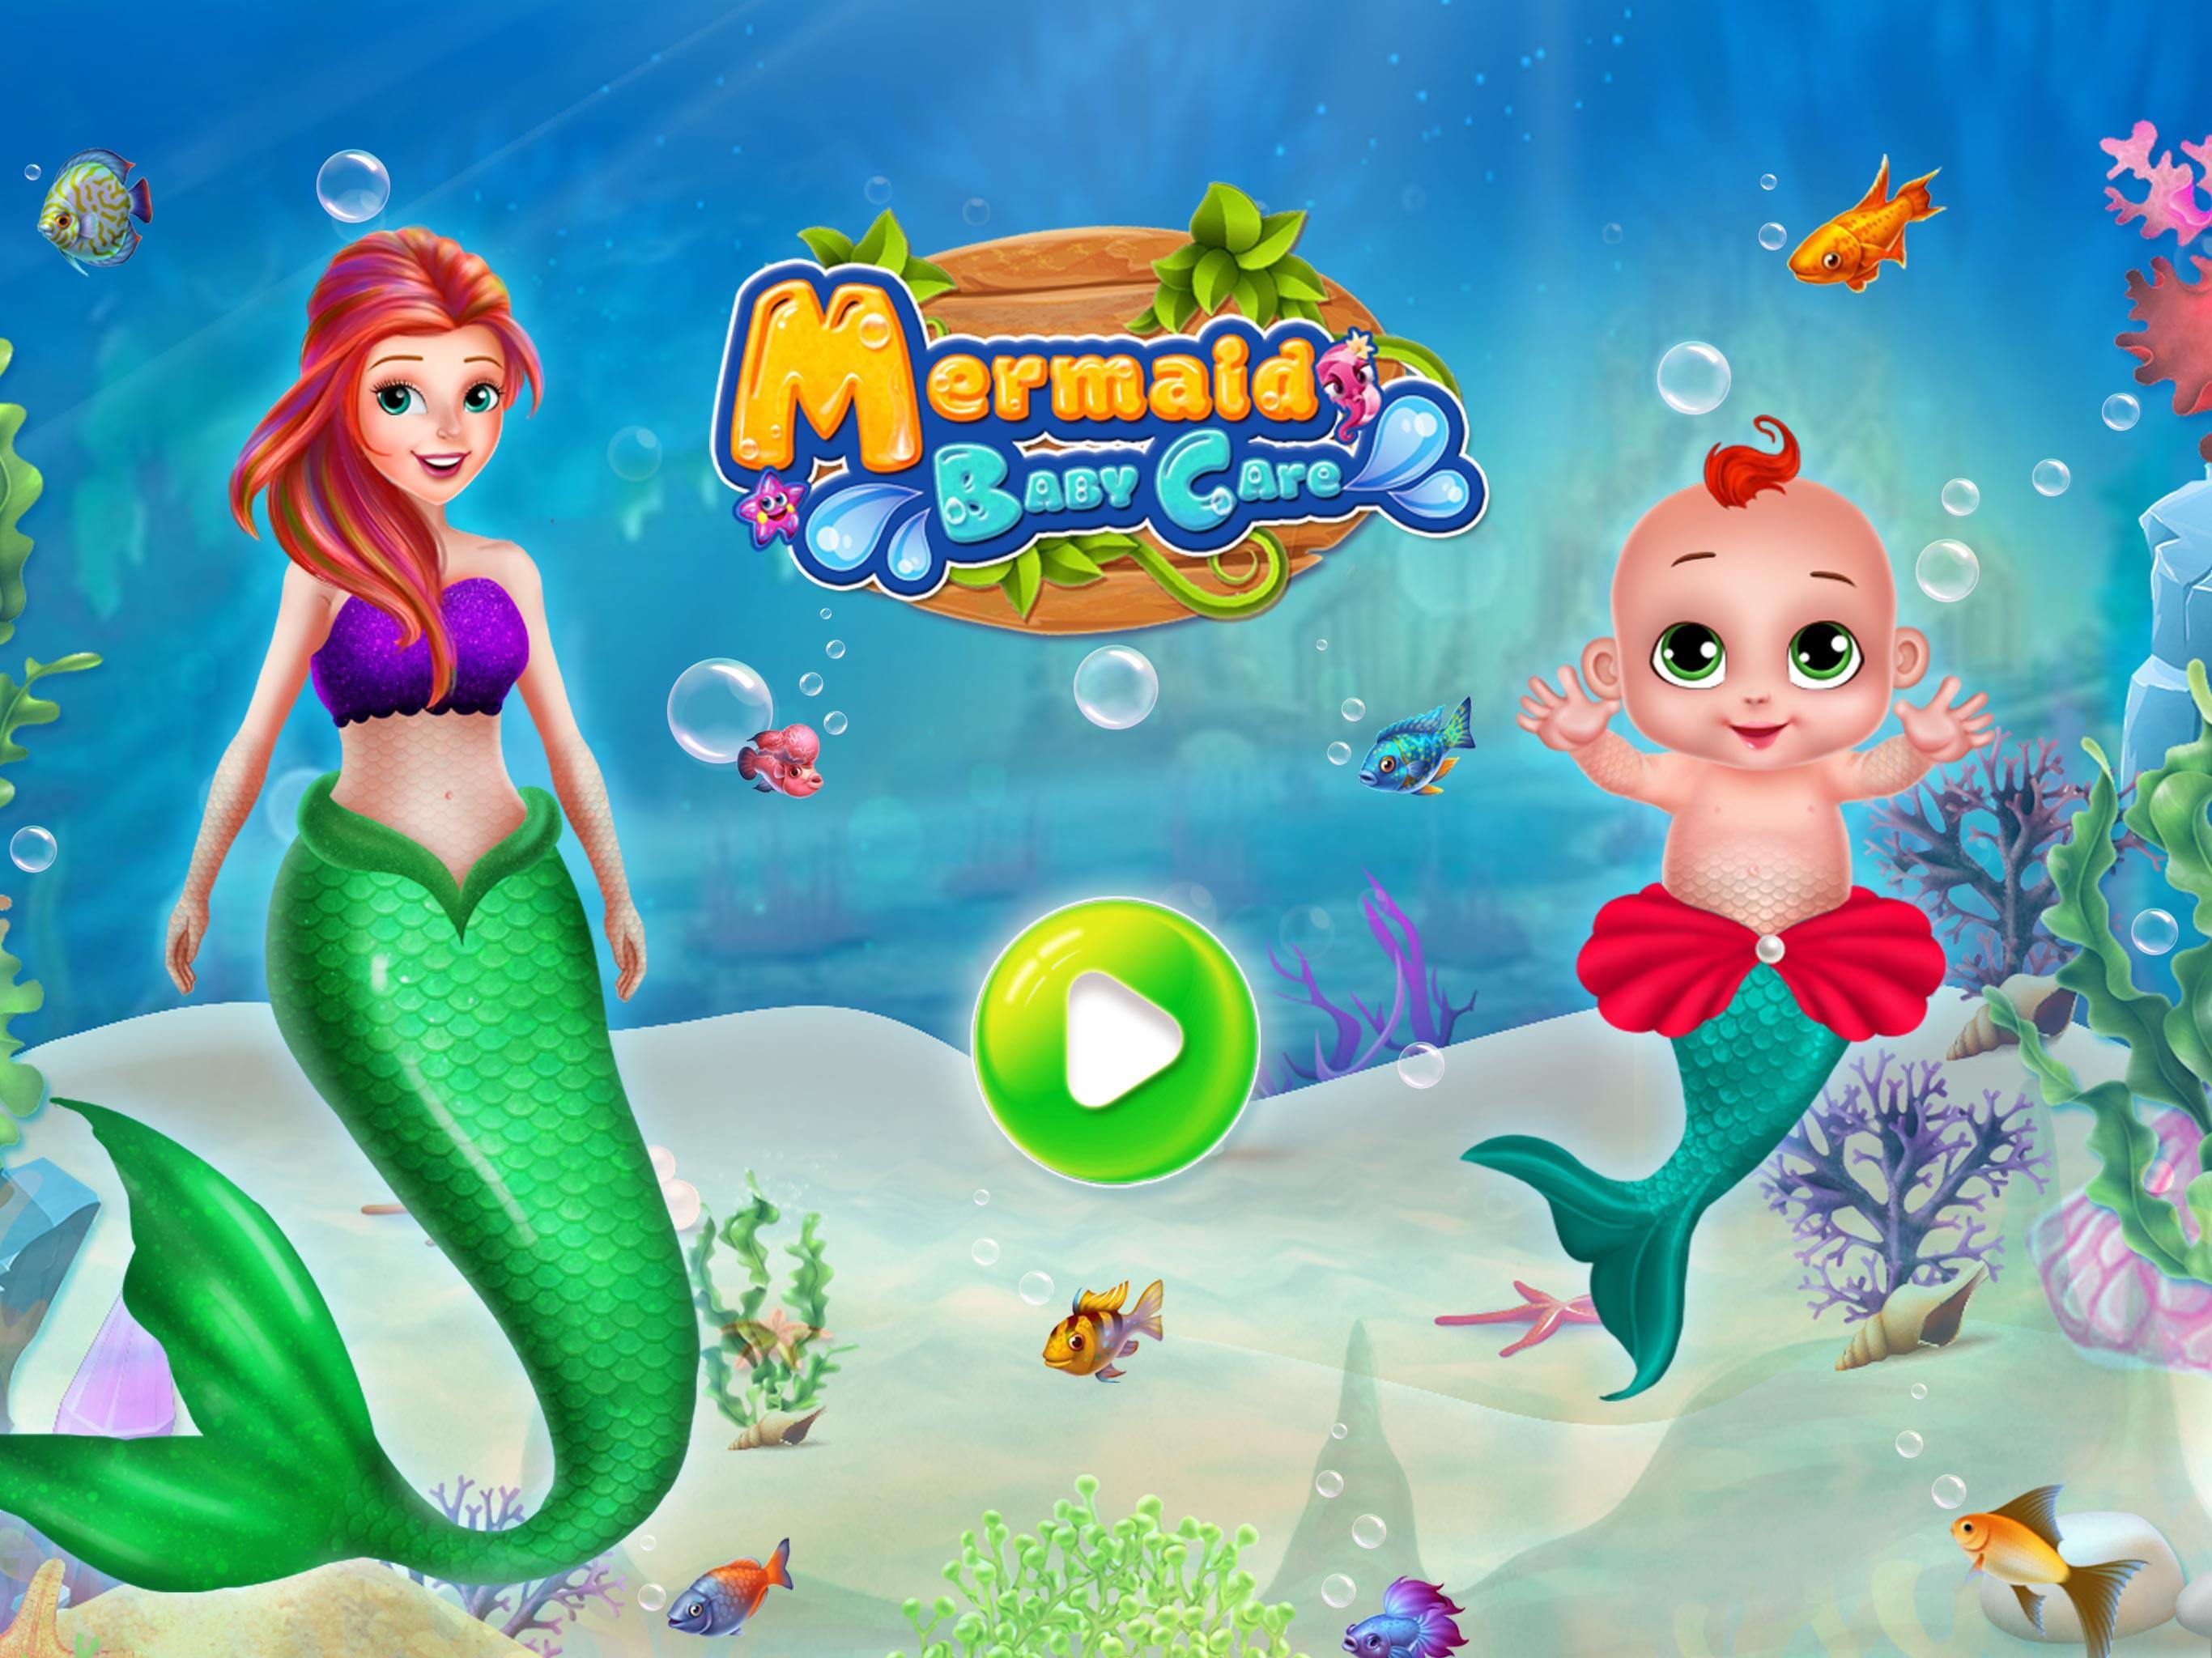 Mermaid Girl Care-Mermaid Game Screenshot 11